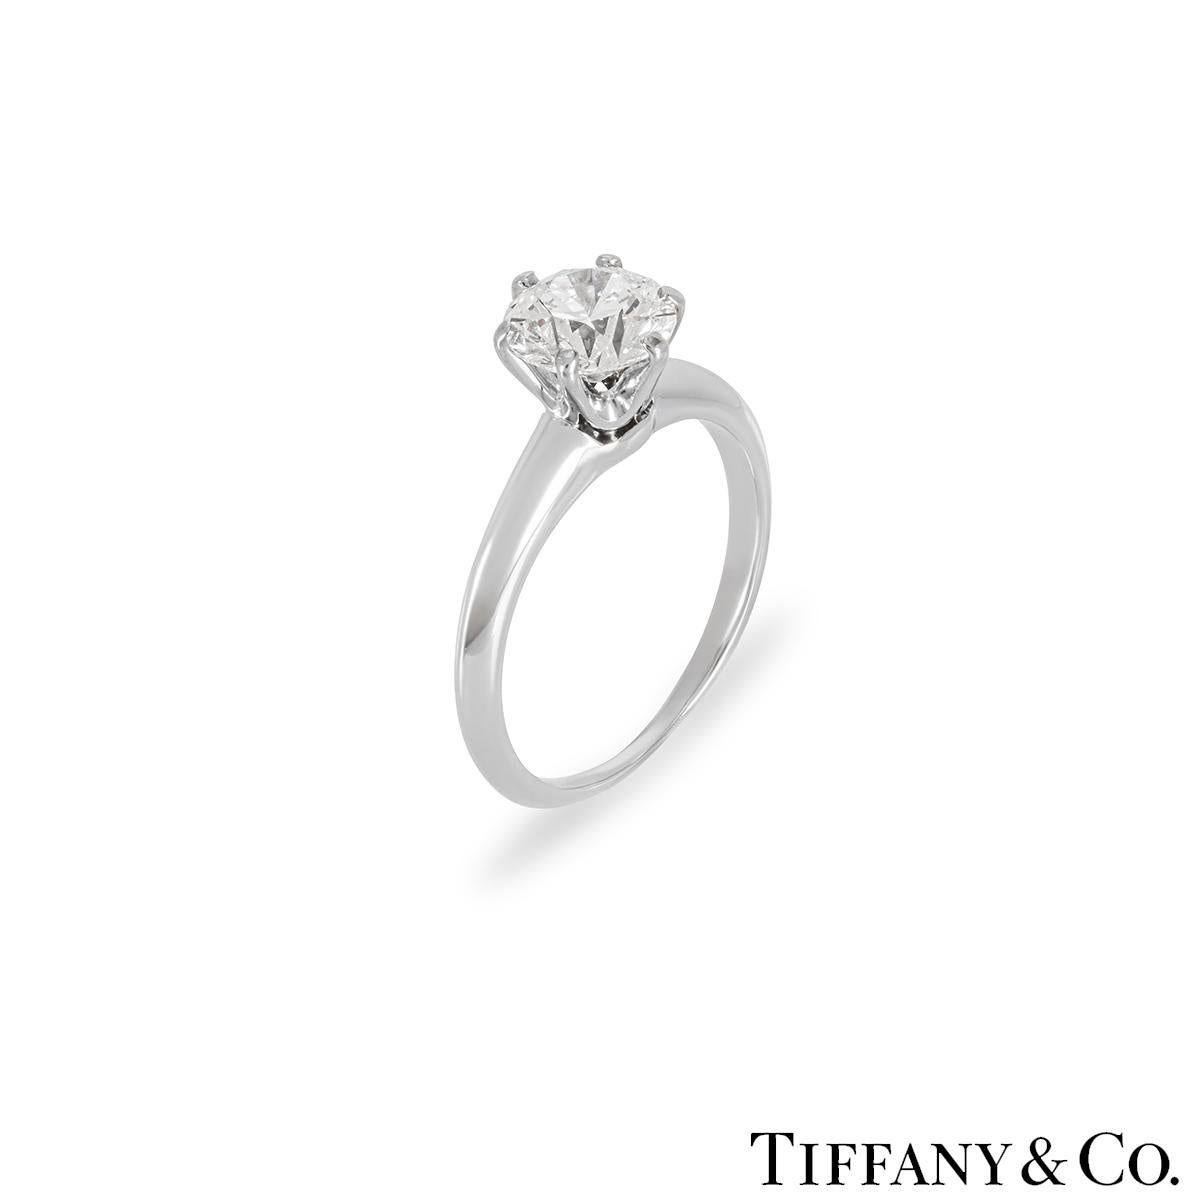 Une superbe bague solitaire en platine et diamant de Tiffany & Co. de la collection Setting. Le solitaire présente un diamant rond de taille brillant serti au centre dans une monture à 6 griffes pesant 1,18ct, de couleur D et de pureté VS1. Le